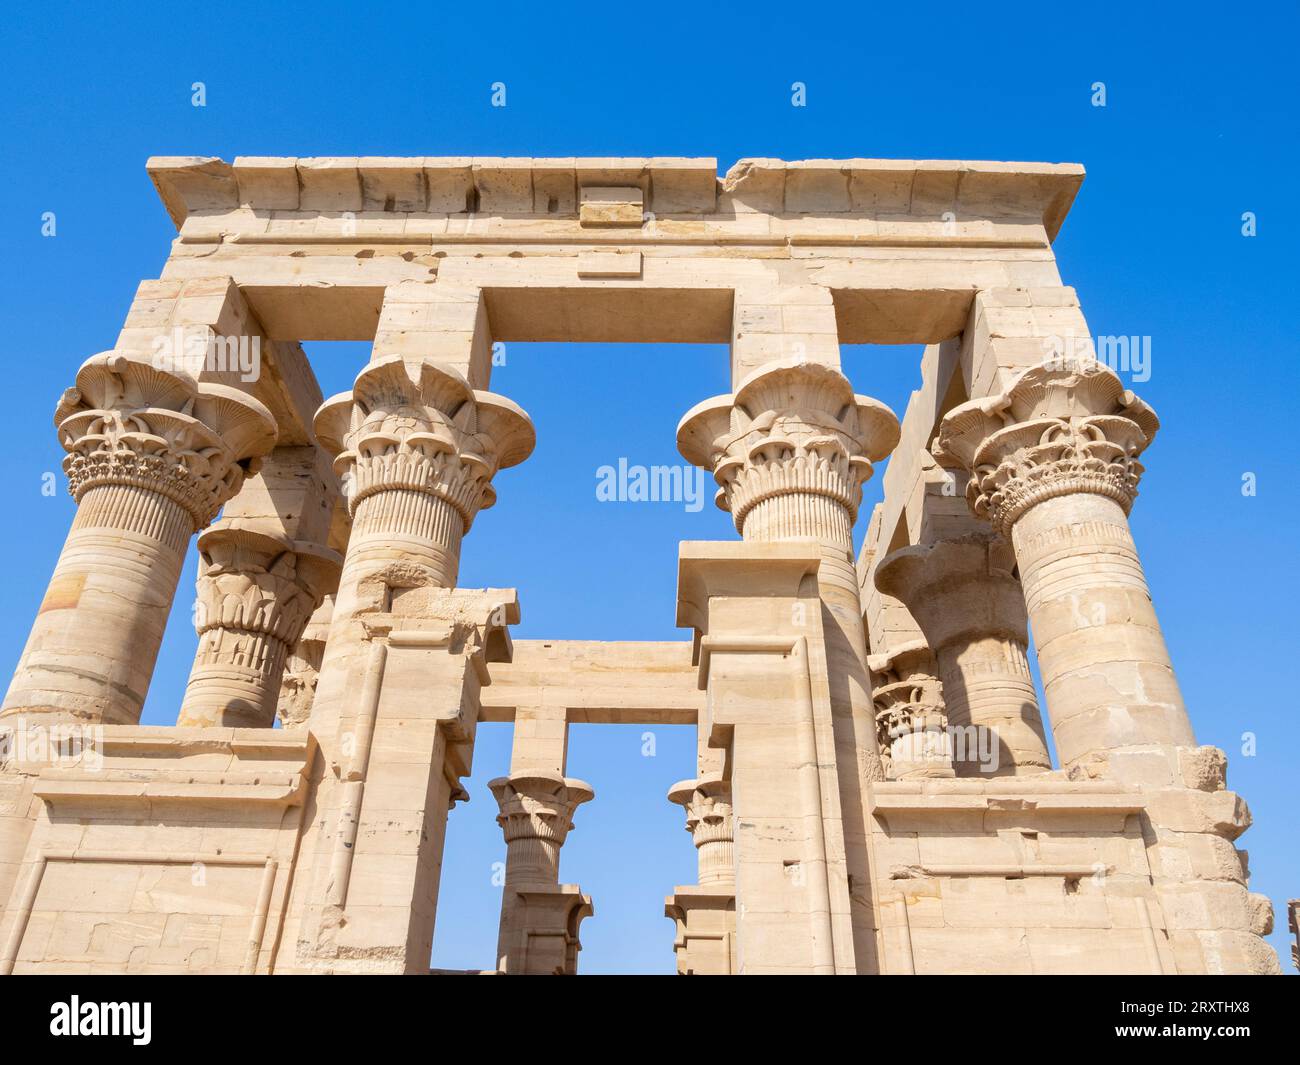 Colonnes du complexe de temples Philae, le temple d'Isis, site du patrimoine mondial de l'UNESCO, actuellement sur l'île d'Agilkia, Egypte, Afrique du Nord, Afrique Banque D'Images